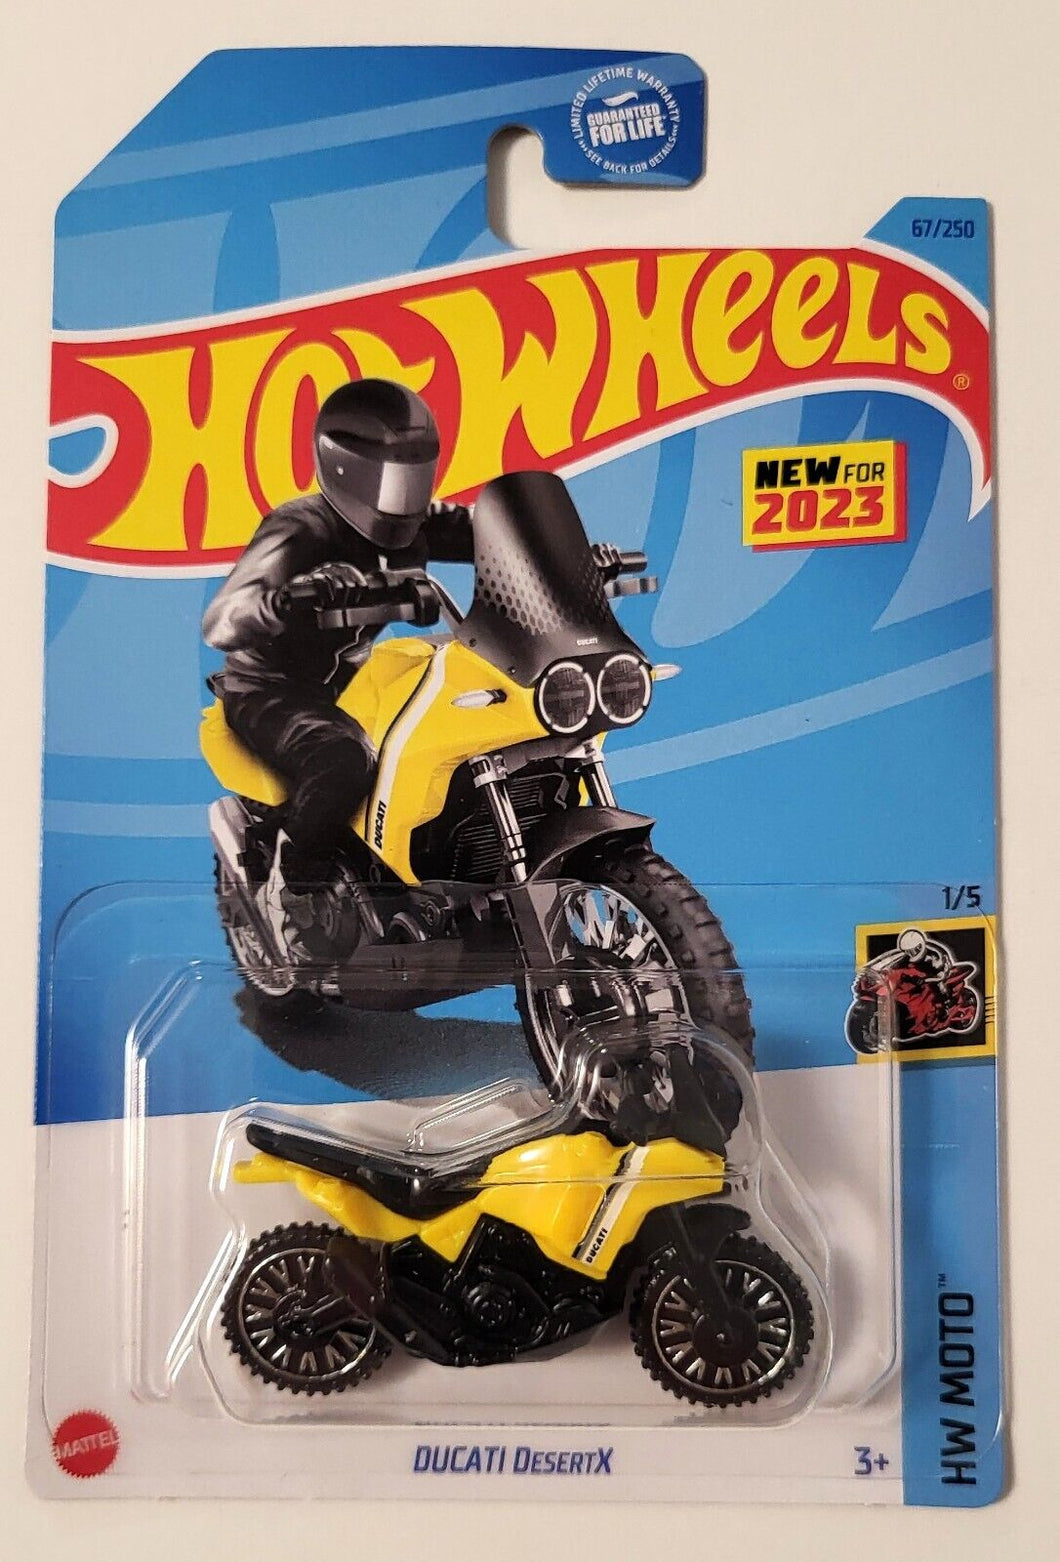 2023 Hot Wheels Ducati Desert X (Yellow) HW Moto 1/5, 67/250 New for 2023